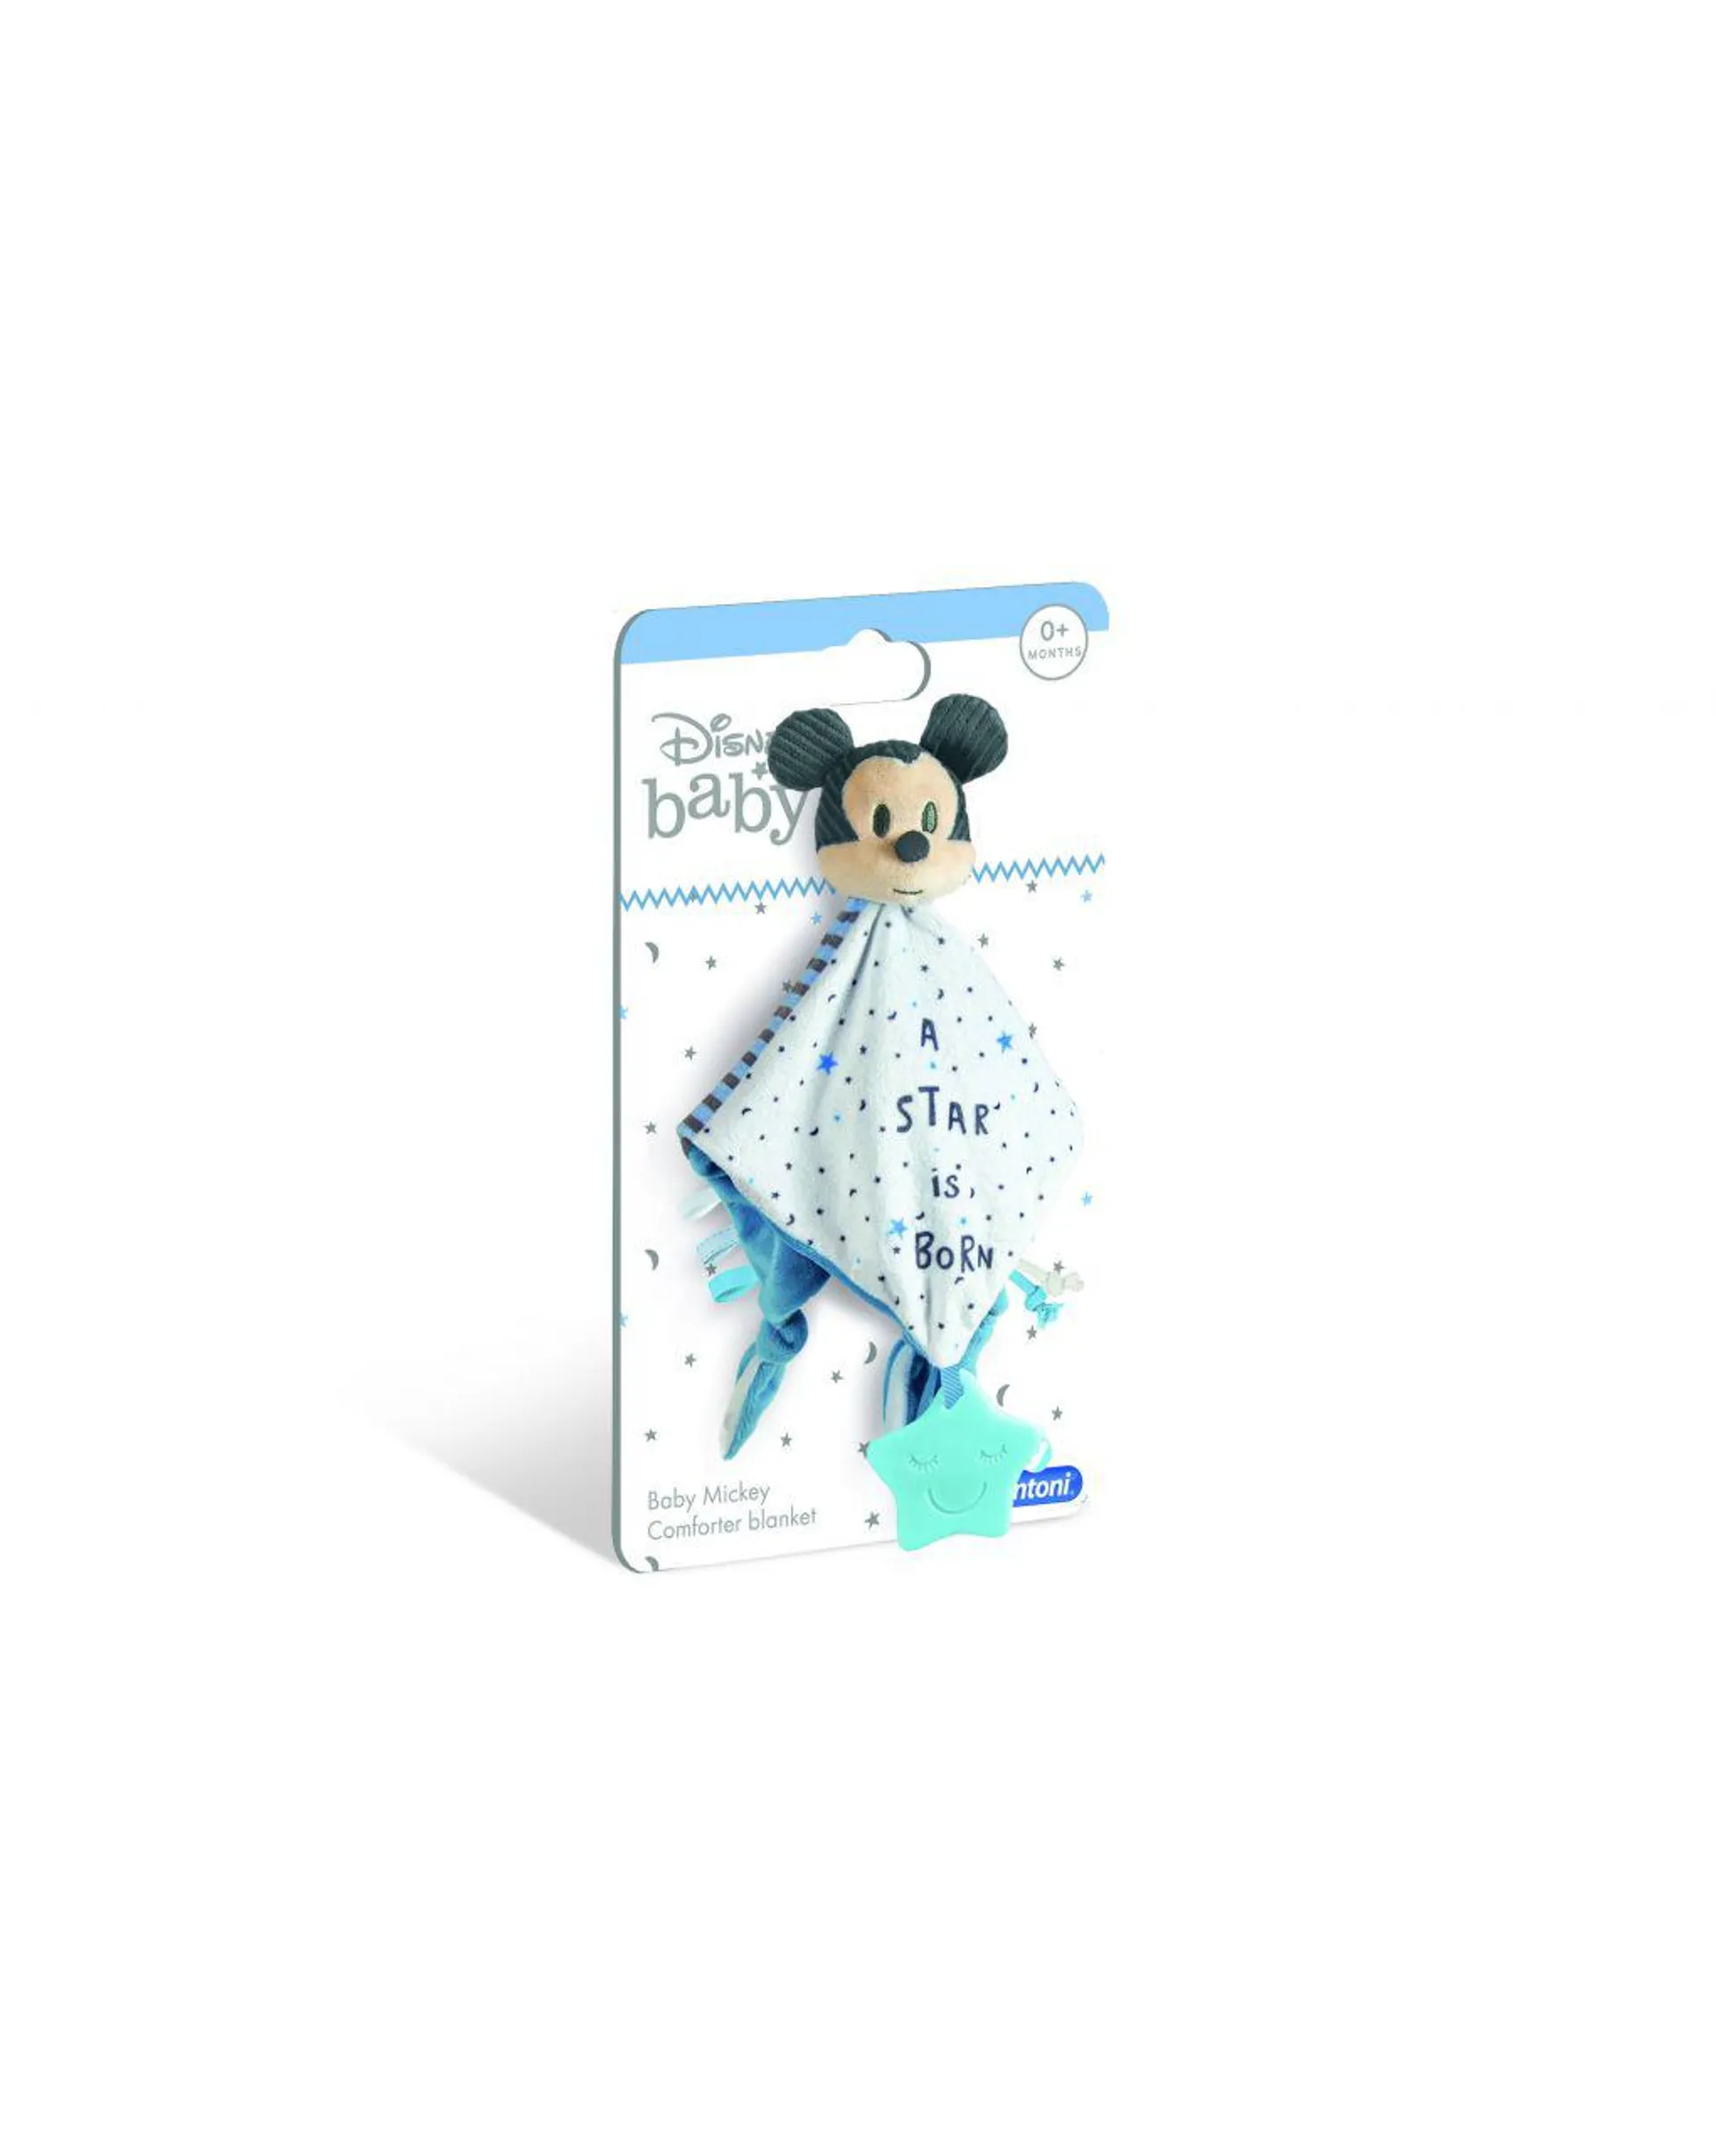 Disney baby – baby mickey morbida copertina